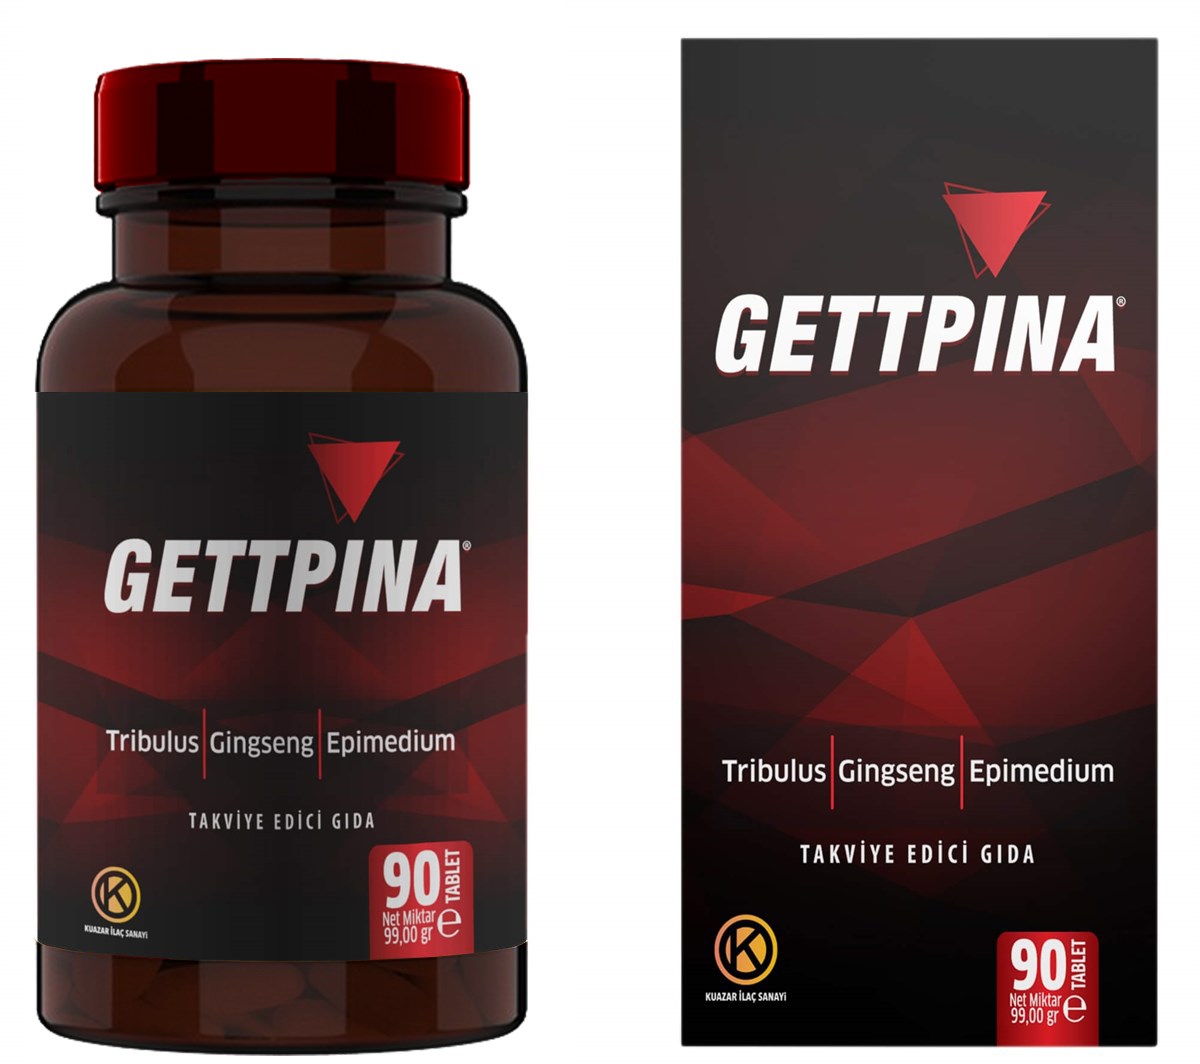 Gettpina - Tribulus, Gingseng ve Epimedium içeren Gıda Takviyesi 90 Tablet  DepoEczanem.com